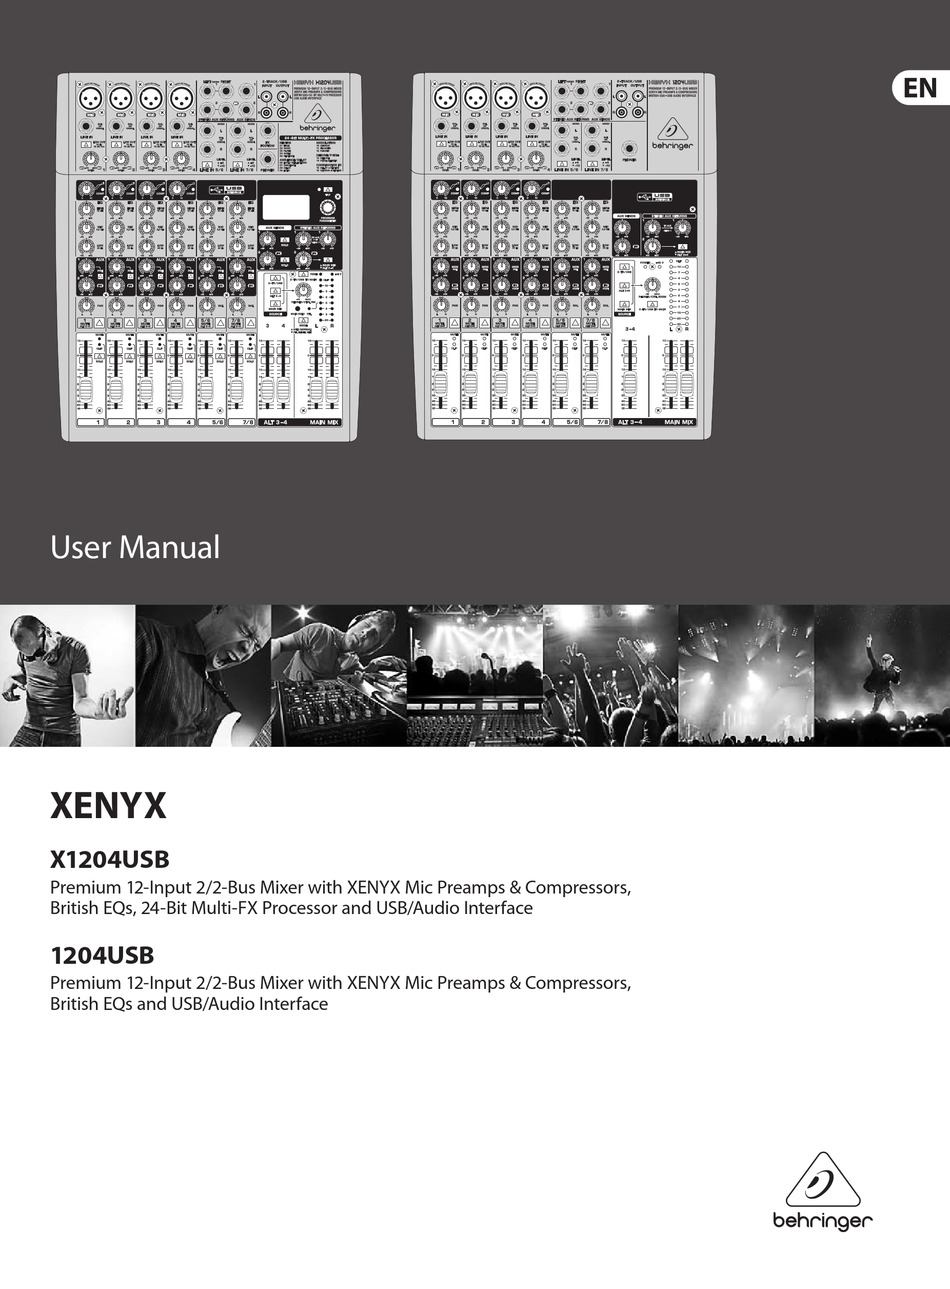 behringer xenyx x1204usb 12 input mixer